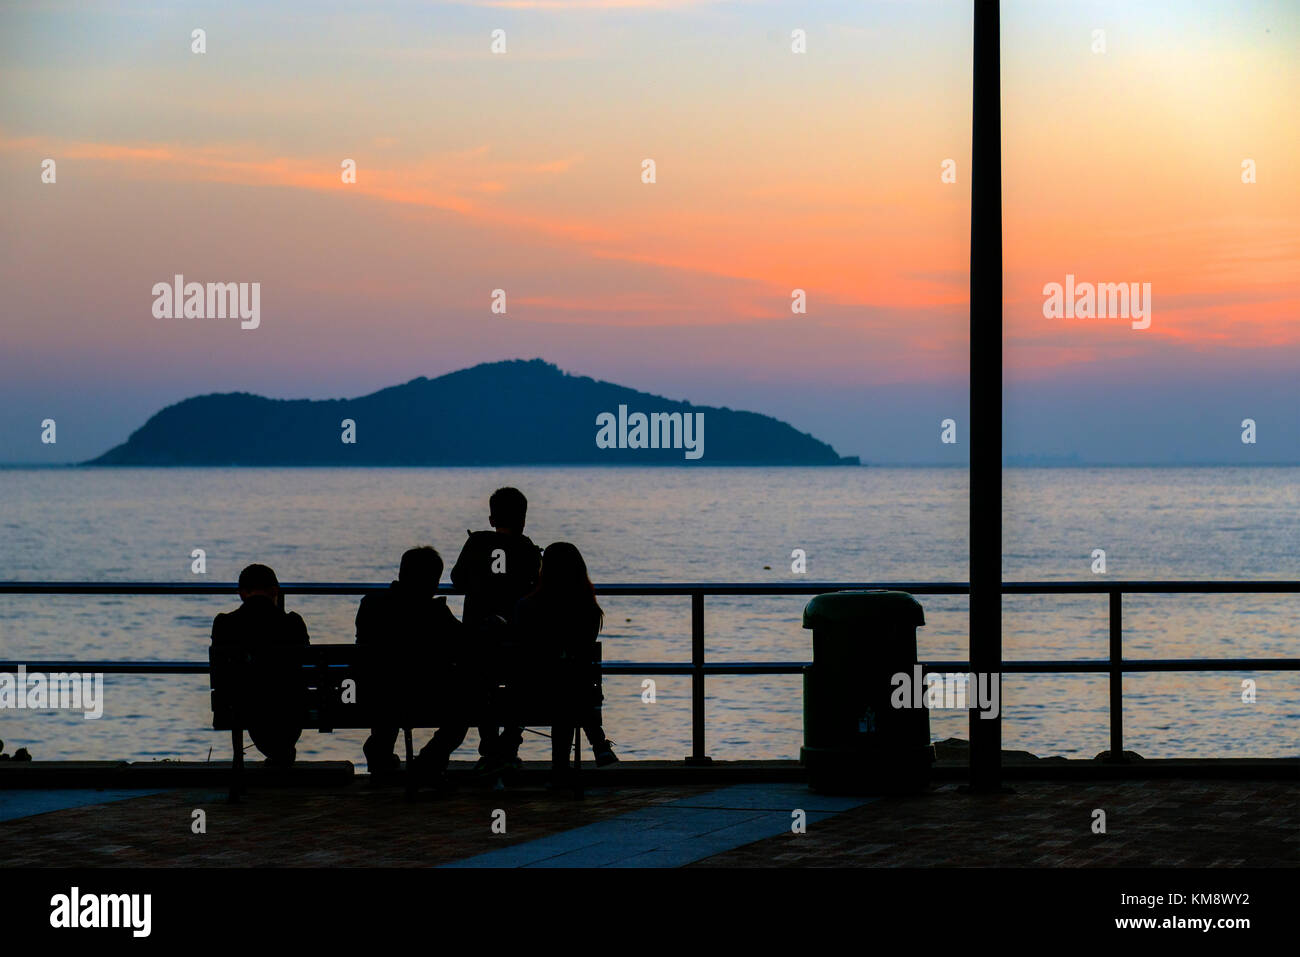 Sunset, Repulse Bay, Hong Kong Stock Photo - Alamy